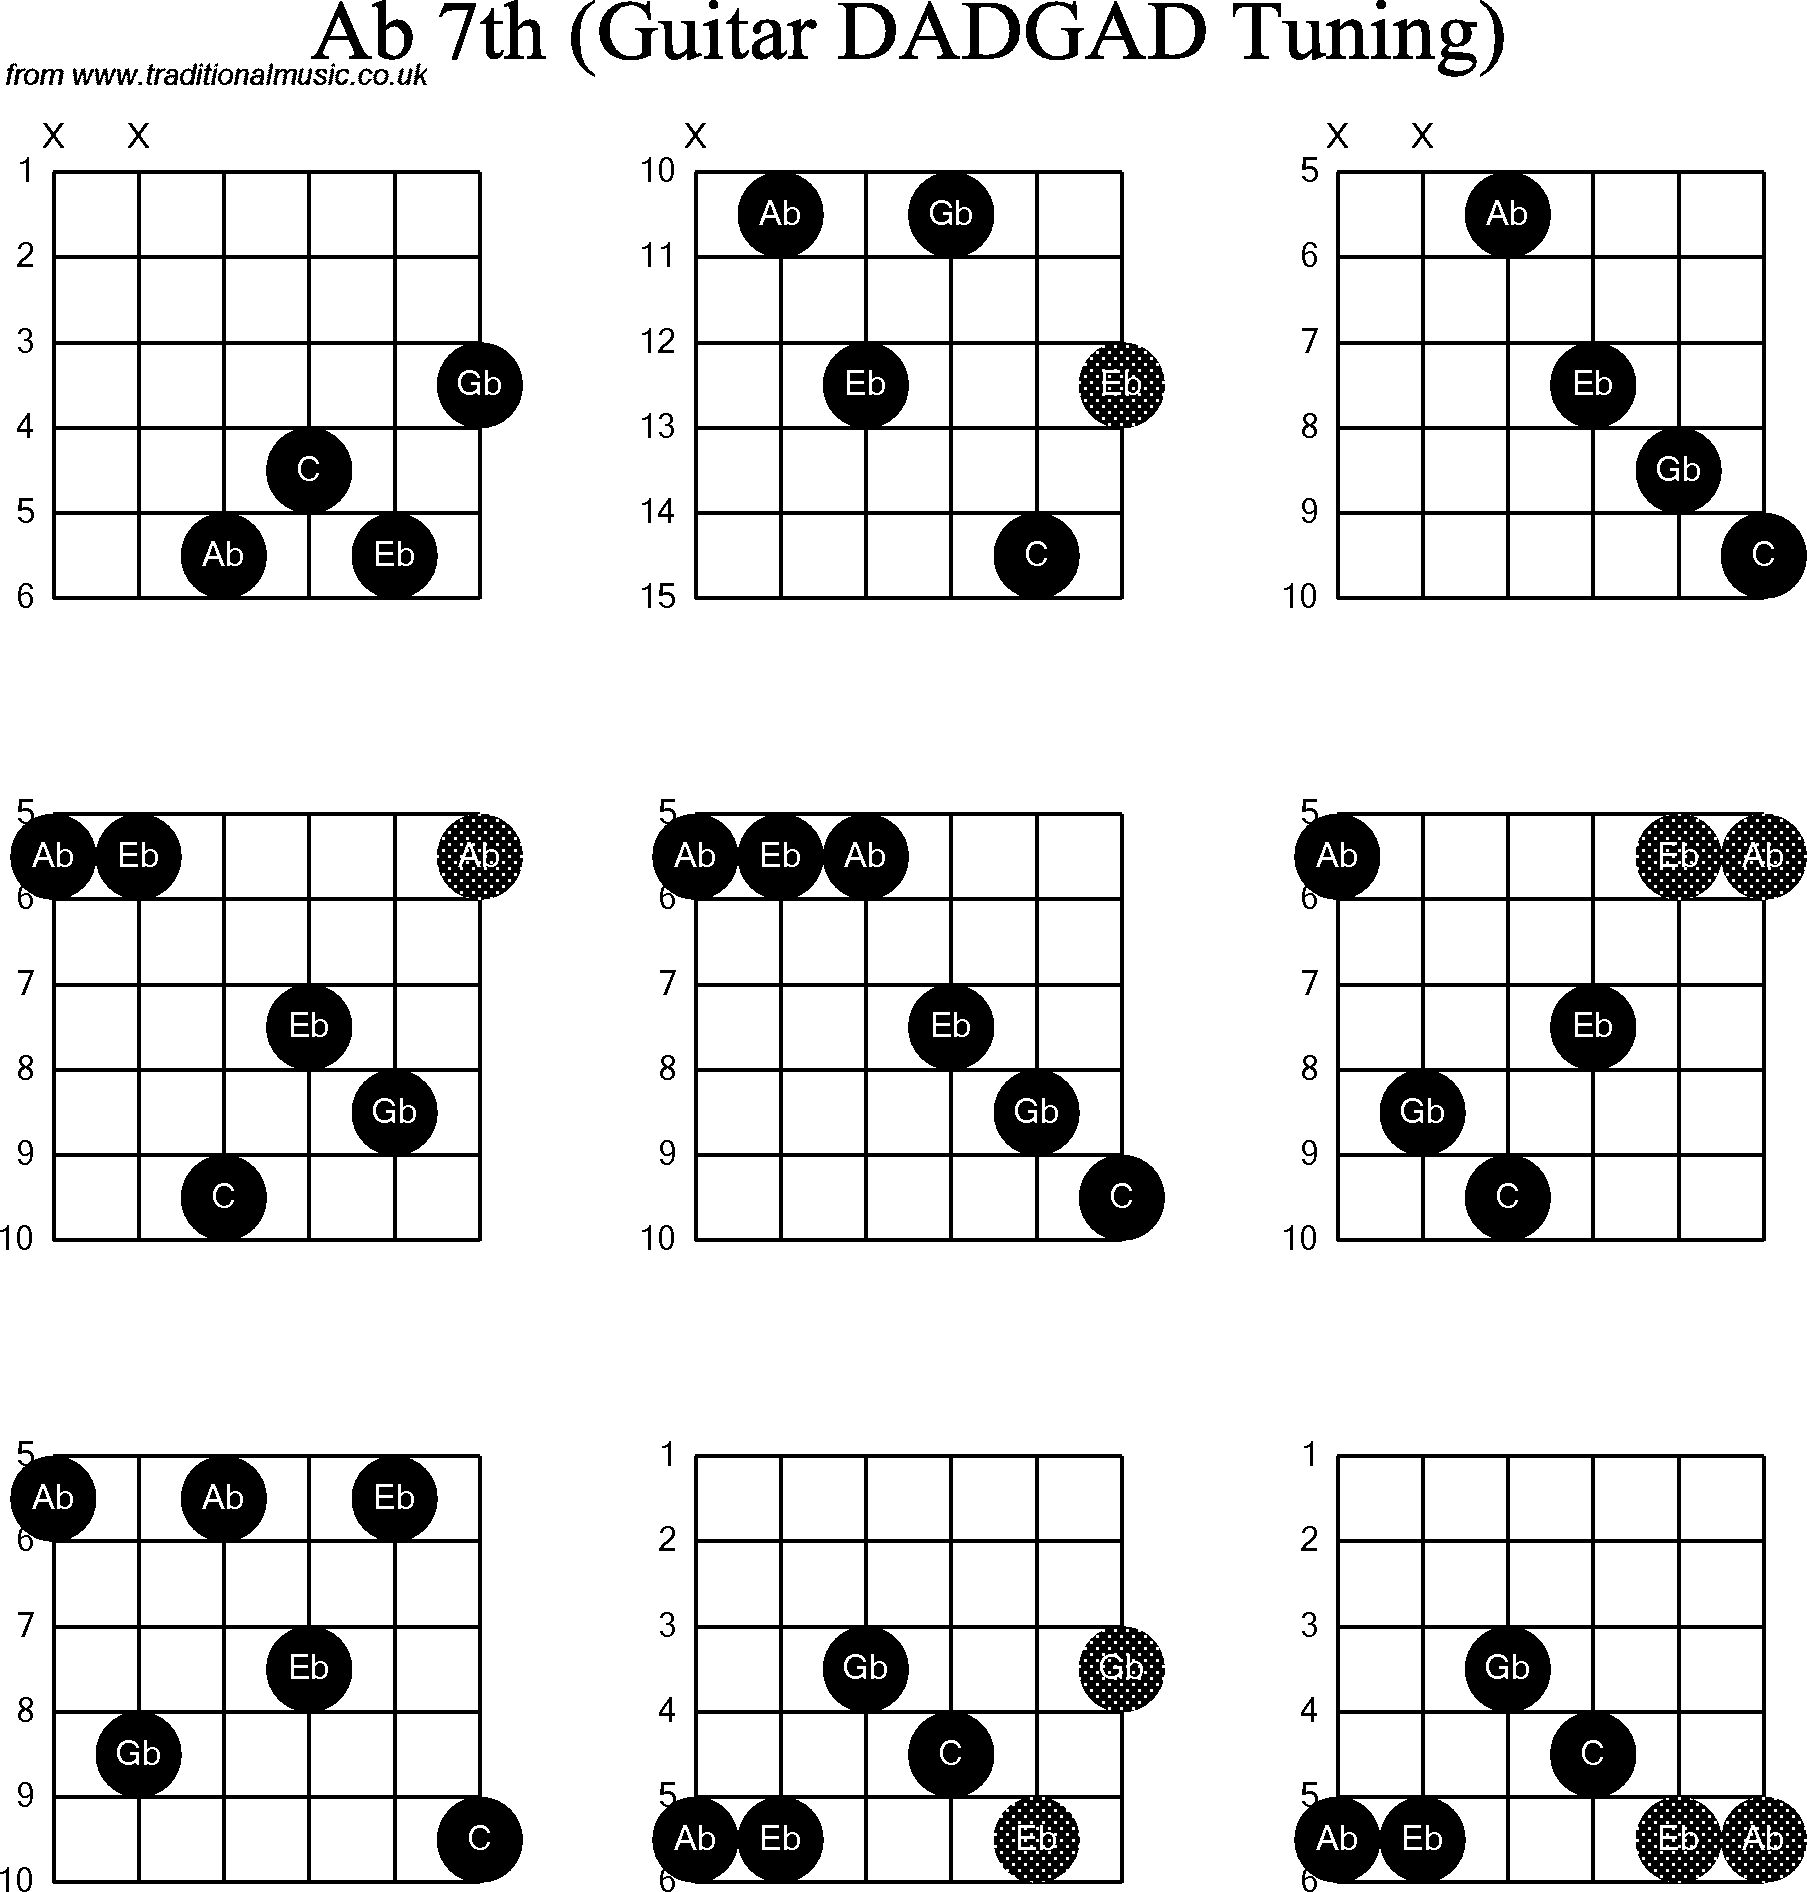 Chord Diagrams for D Modal Guitar(DADGAD), Ab7th